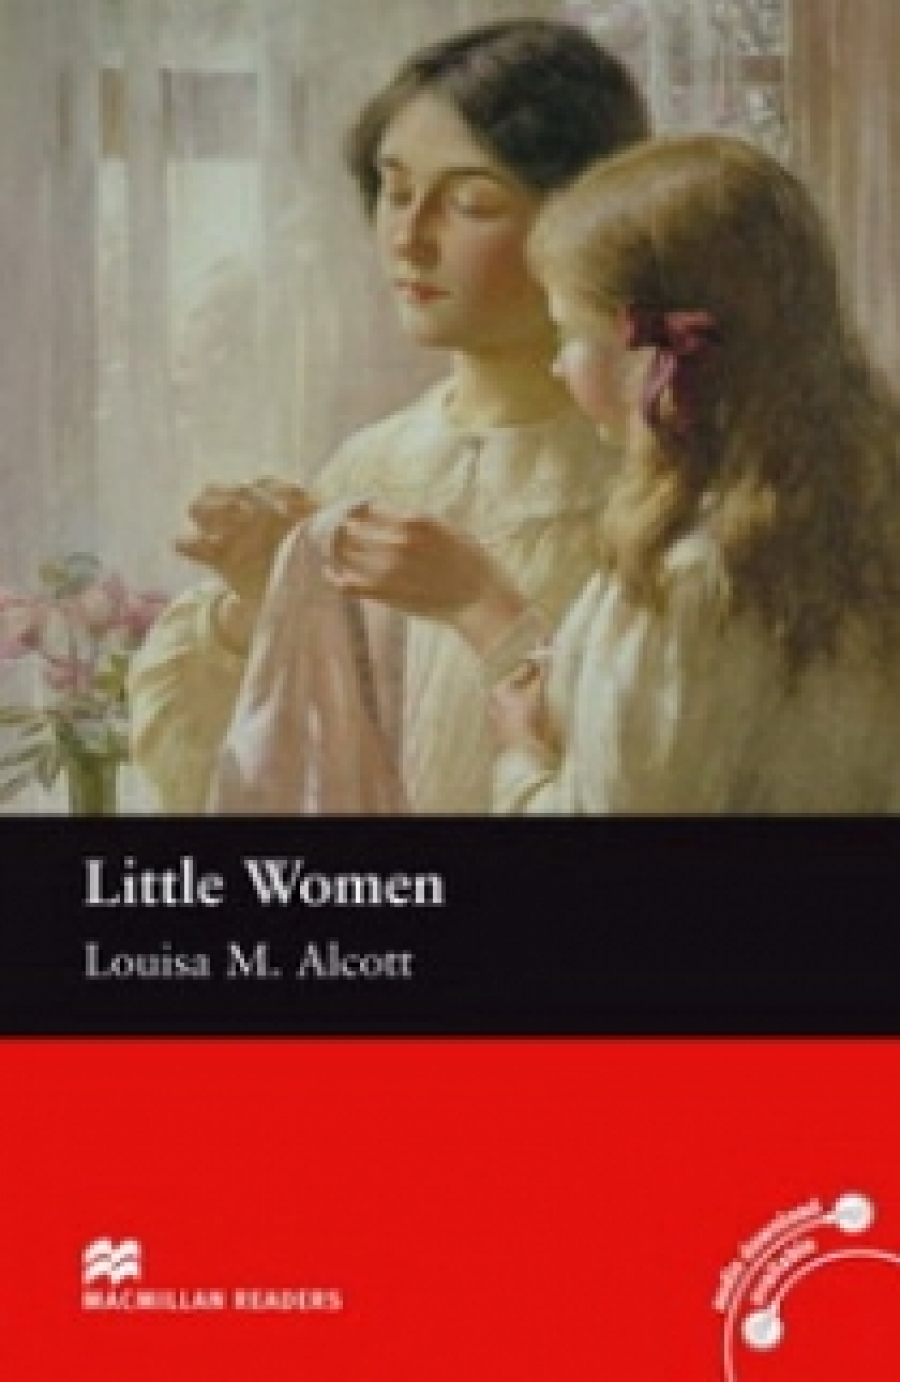 Louisa M. Alcott, retold by Anne Collins Little Women 